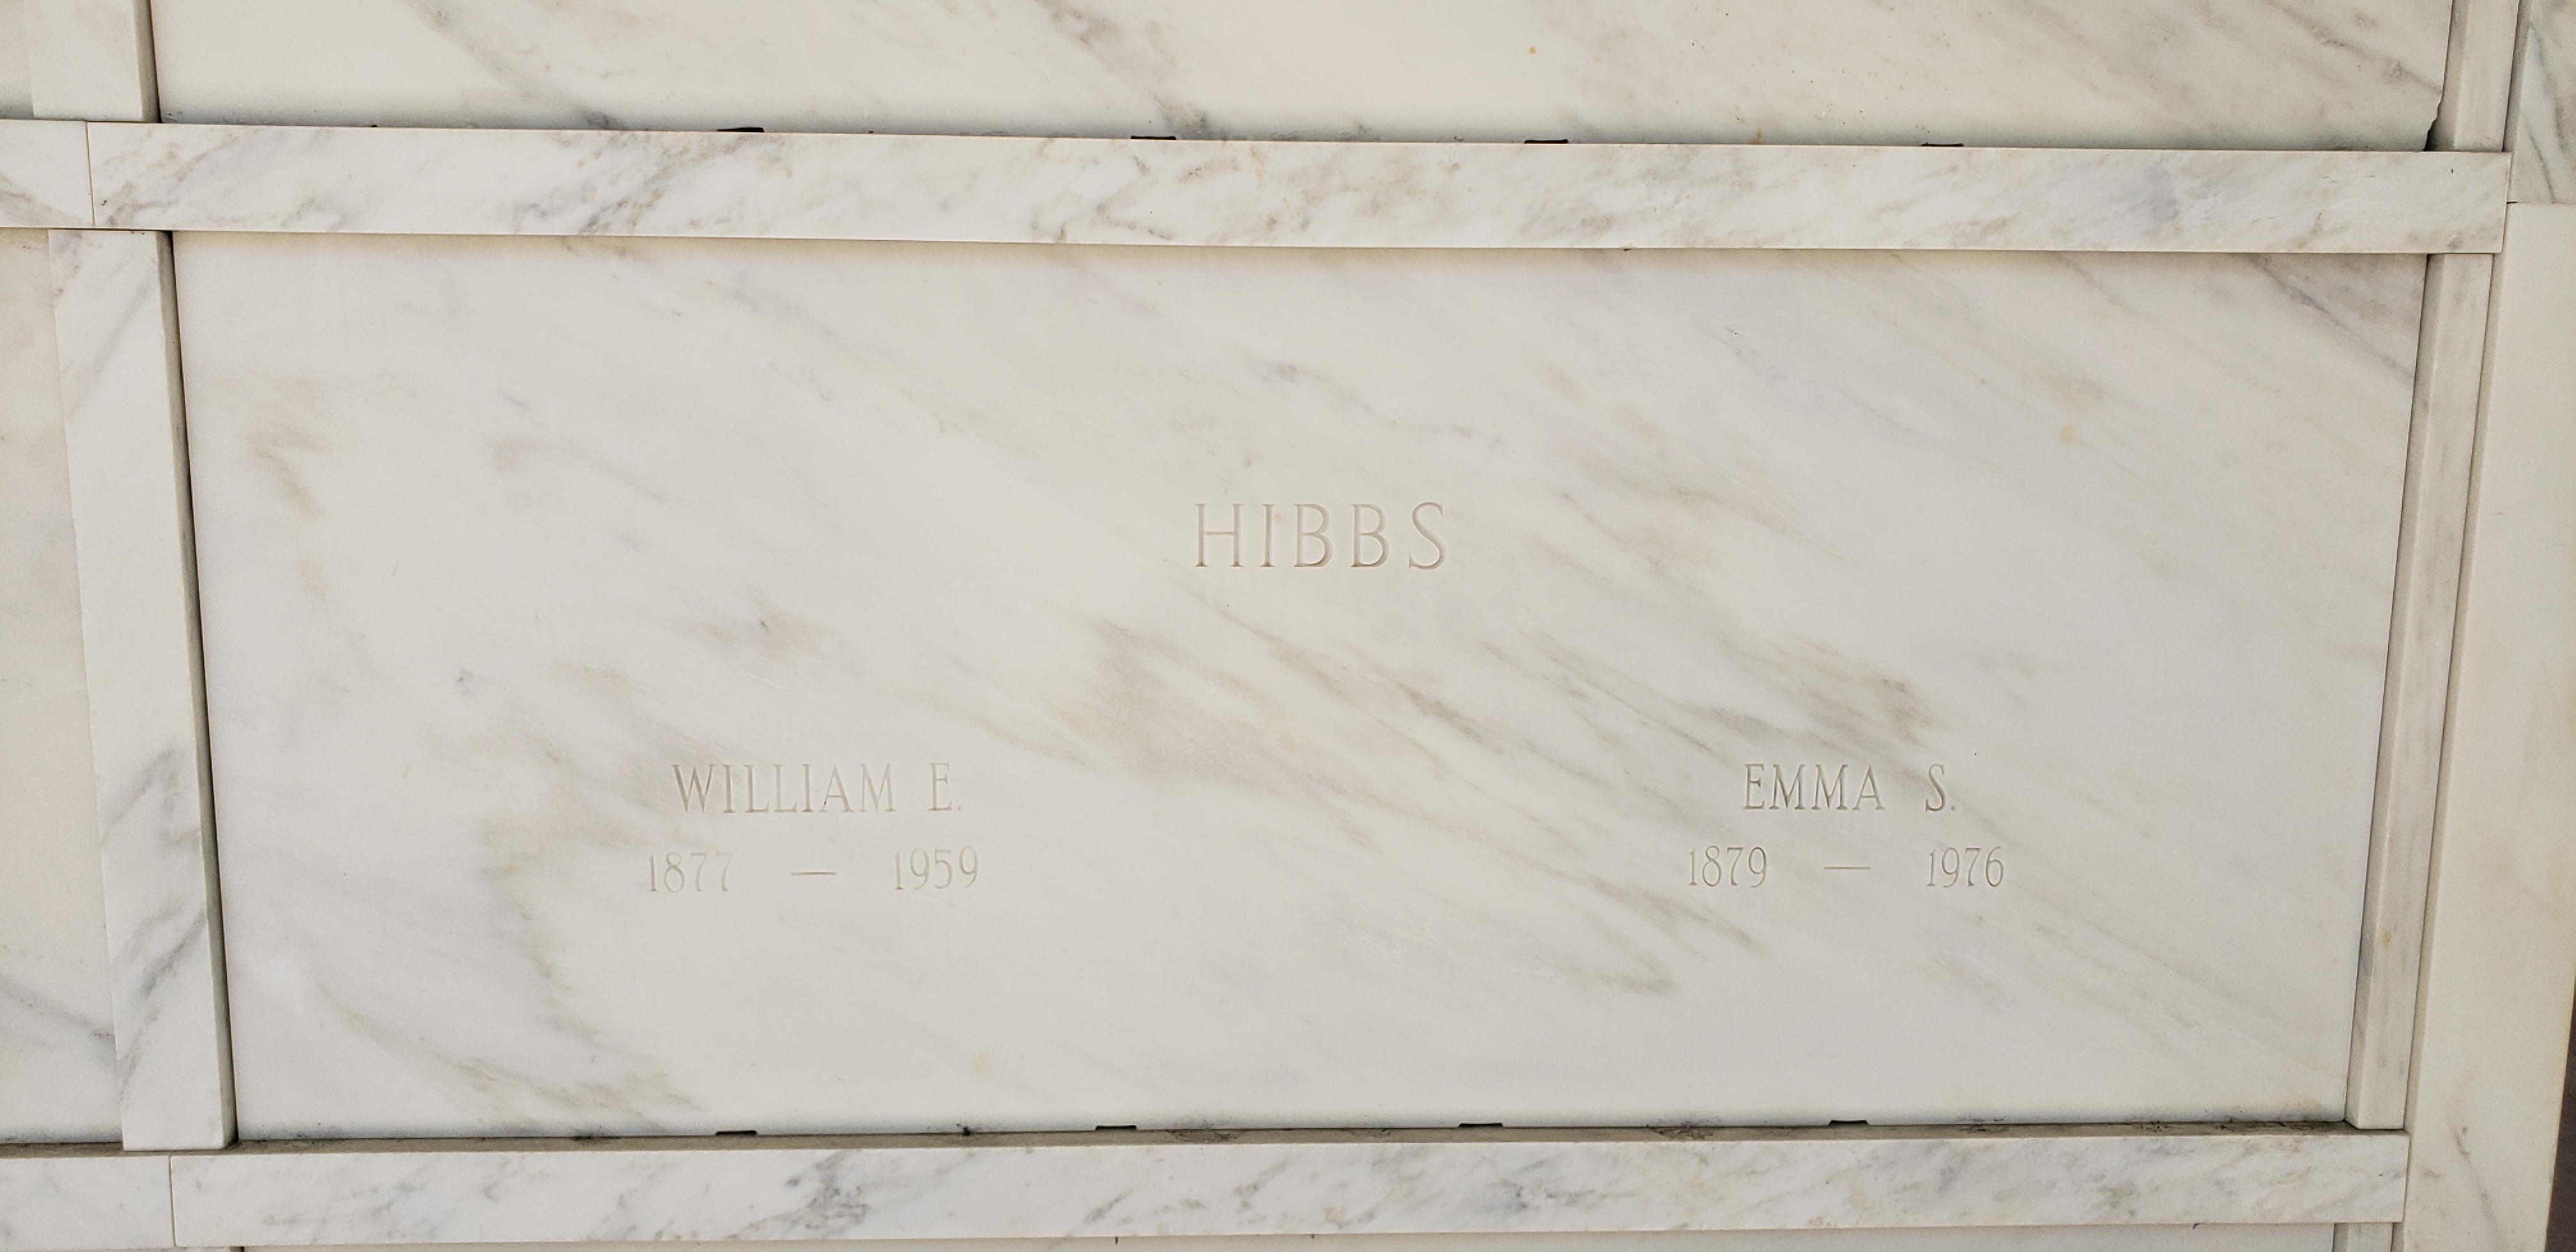 William E Hibbs